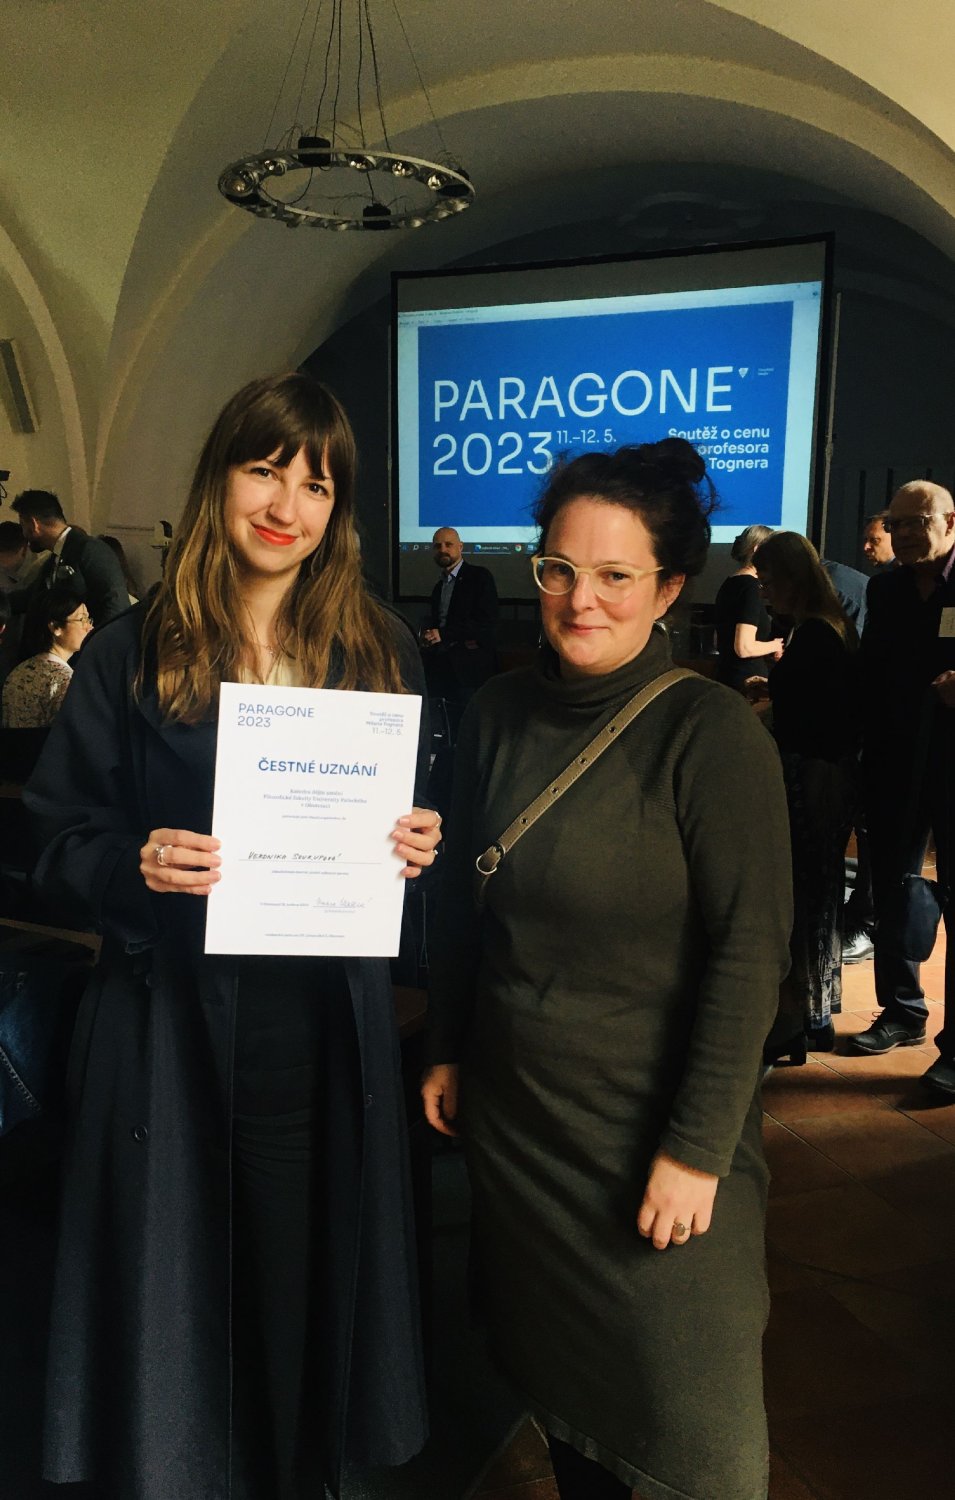 Čestné uznání pro Veroniku Soukupovou v soutěži Paragone